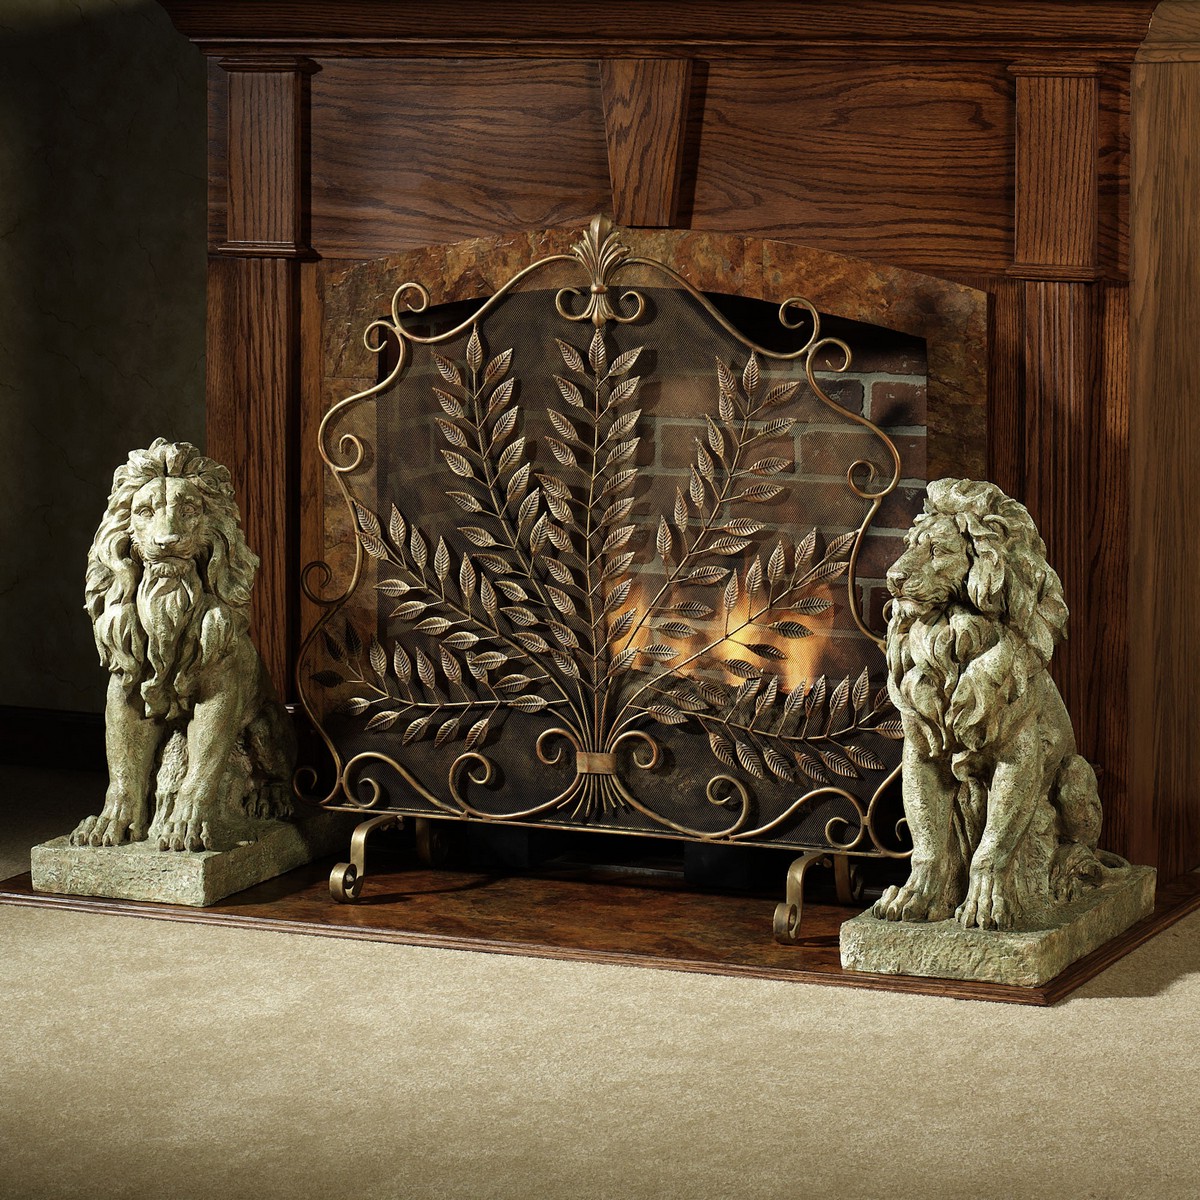 mosaic fireplace screen, fireplace screen in babys nursery, corner fireplace screen, safe fireplace screen